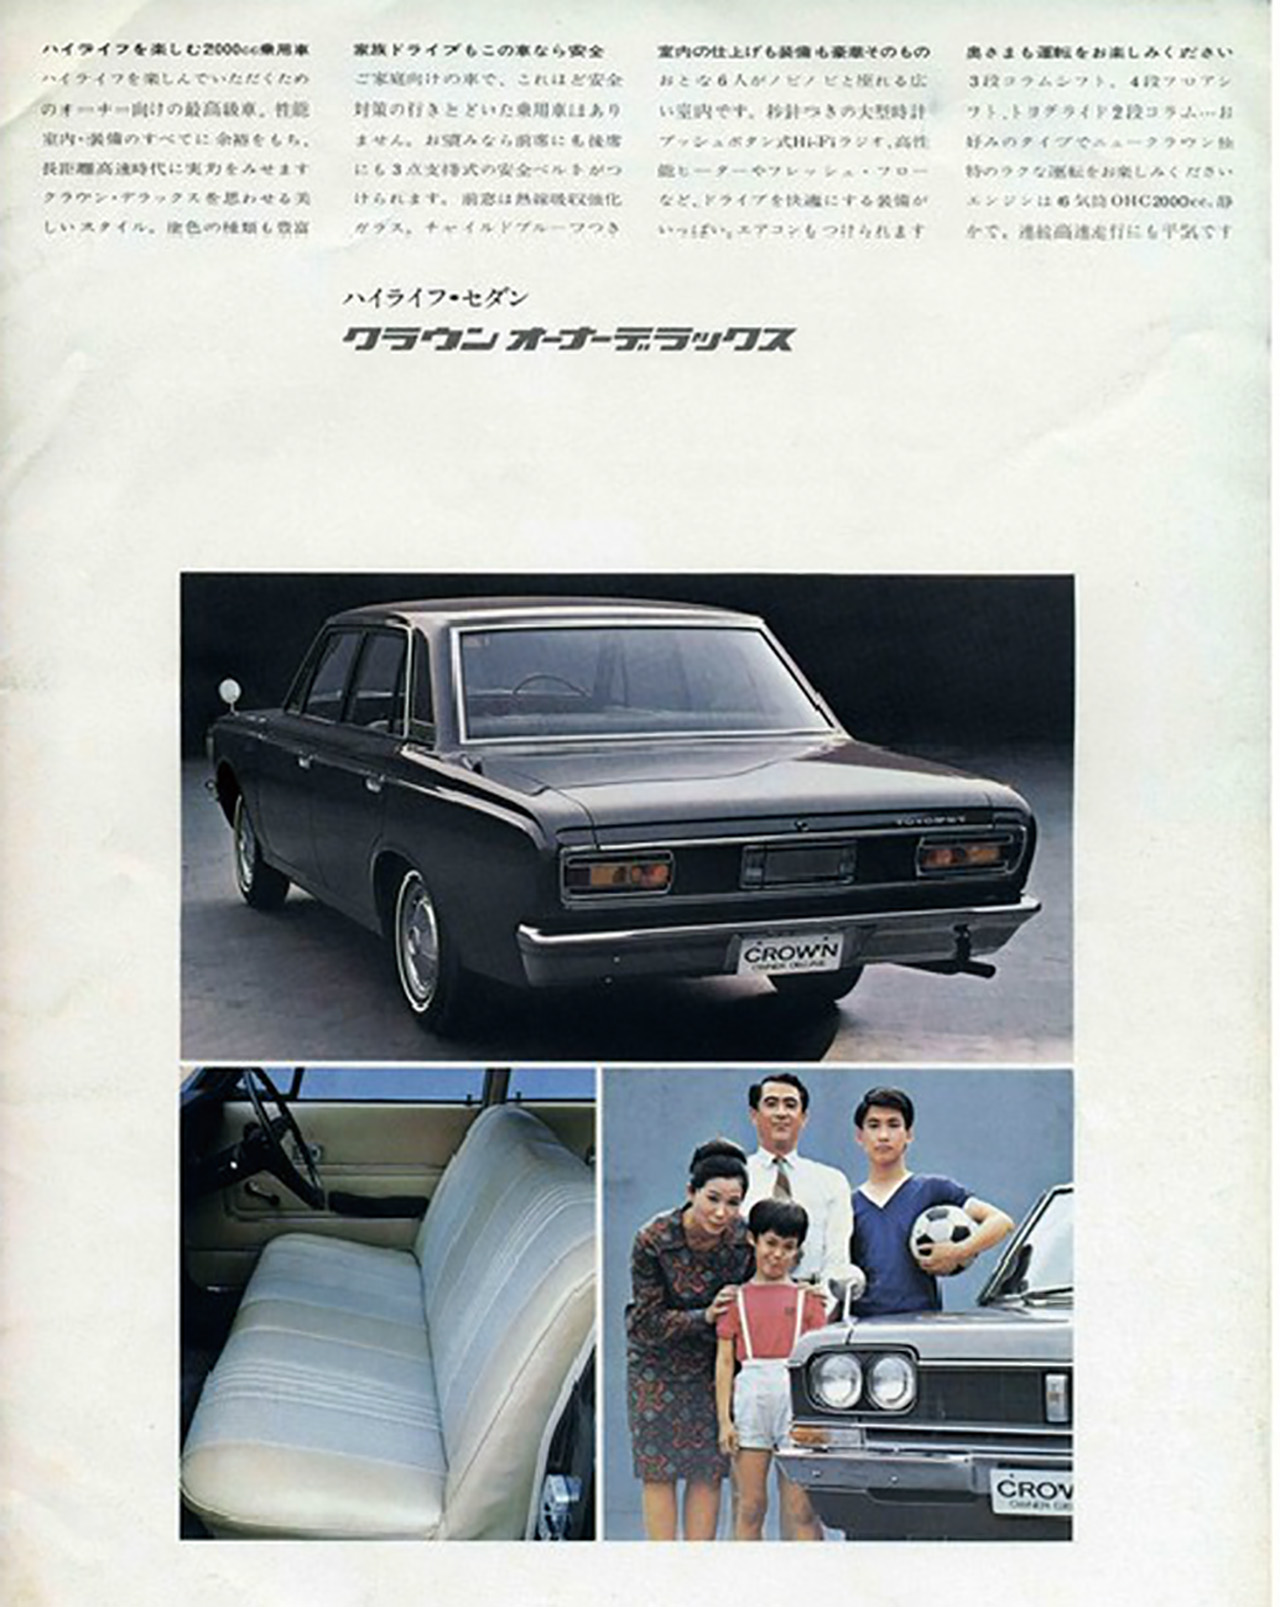 月刊自家用車とニッポンのクルマ60年 中古車なら グーネット